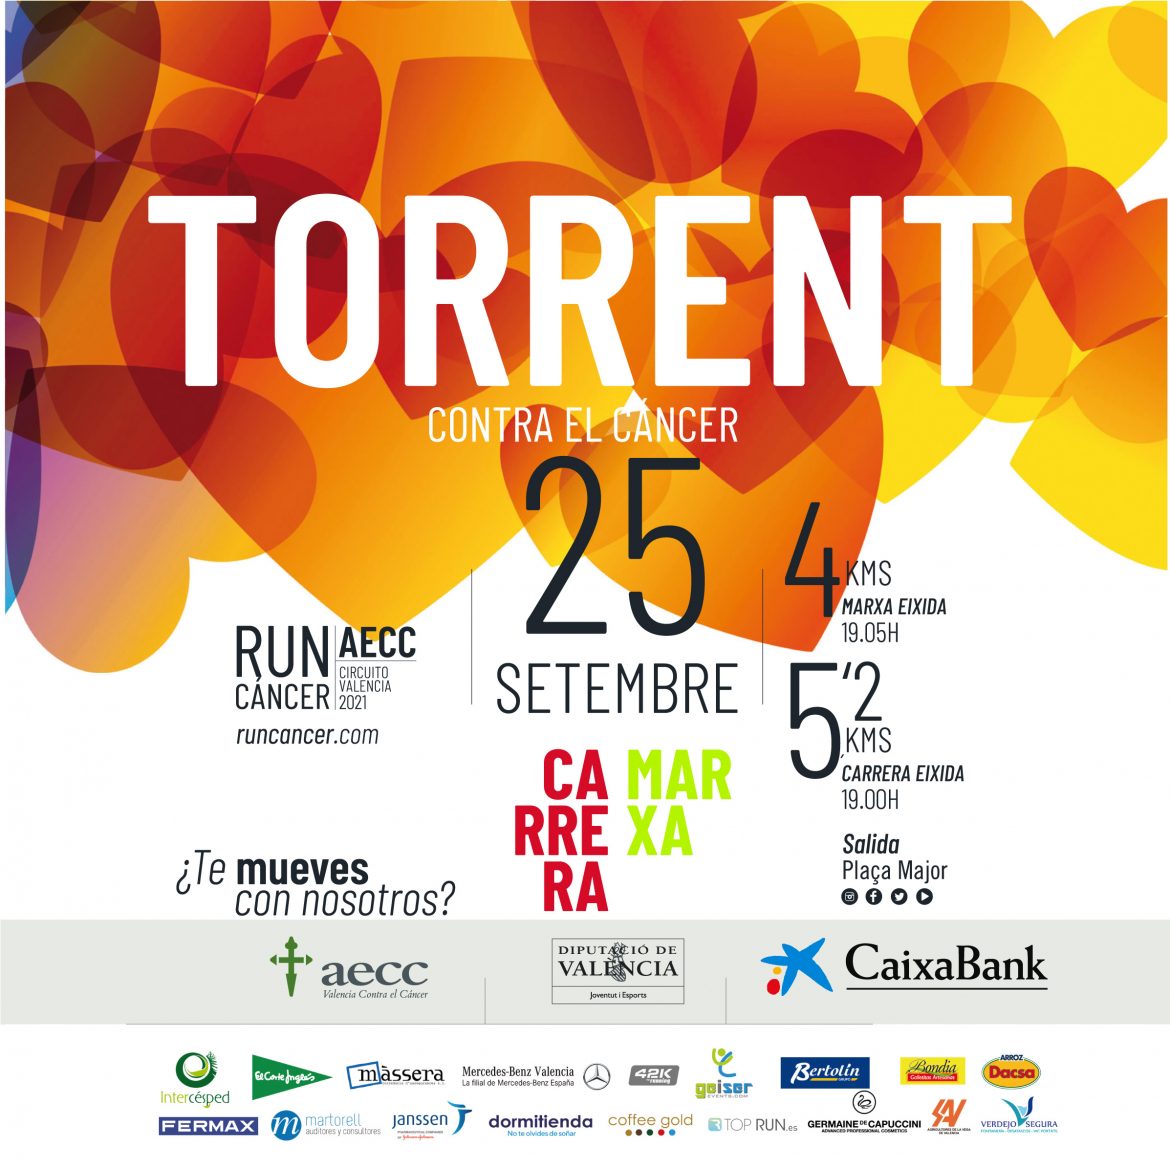 Torrent recauda 9935 € en la carrera solidaria contra el càncer